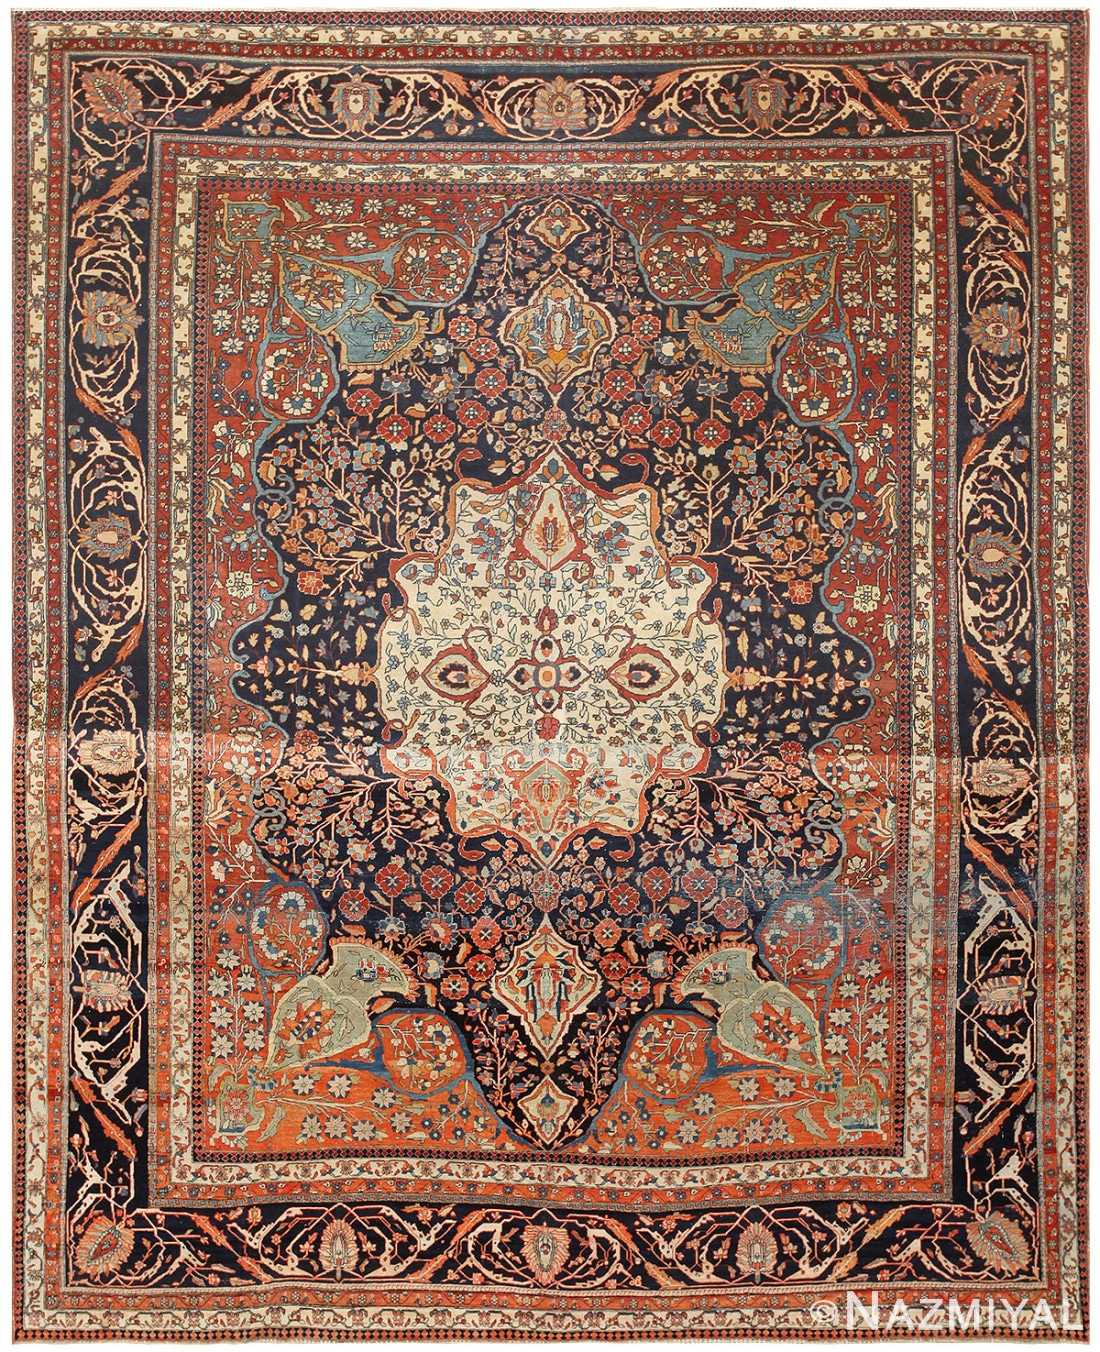 Antique Persian Mohtasham Kashan Carpet by Nazmiyal